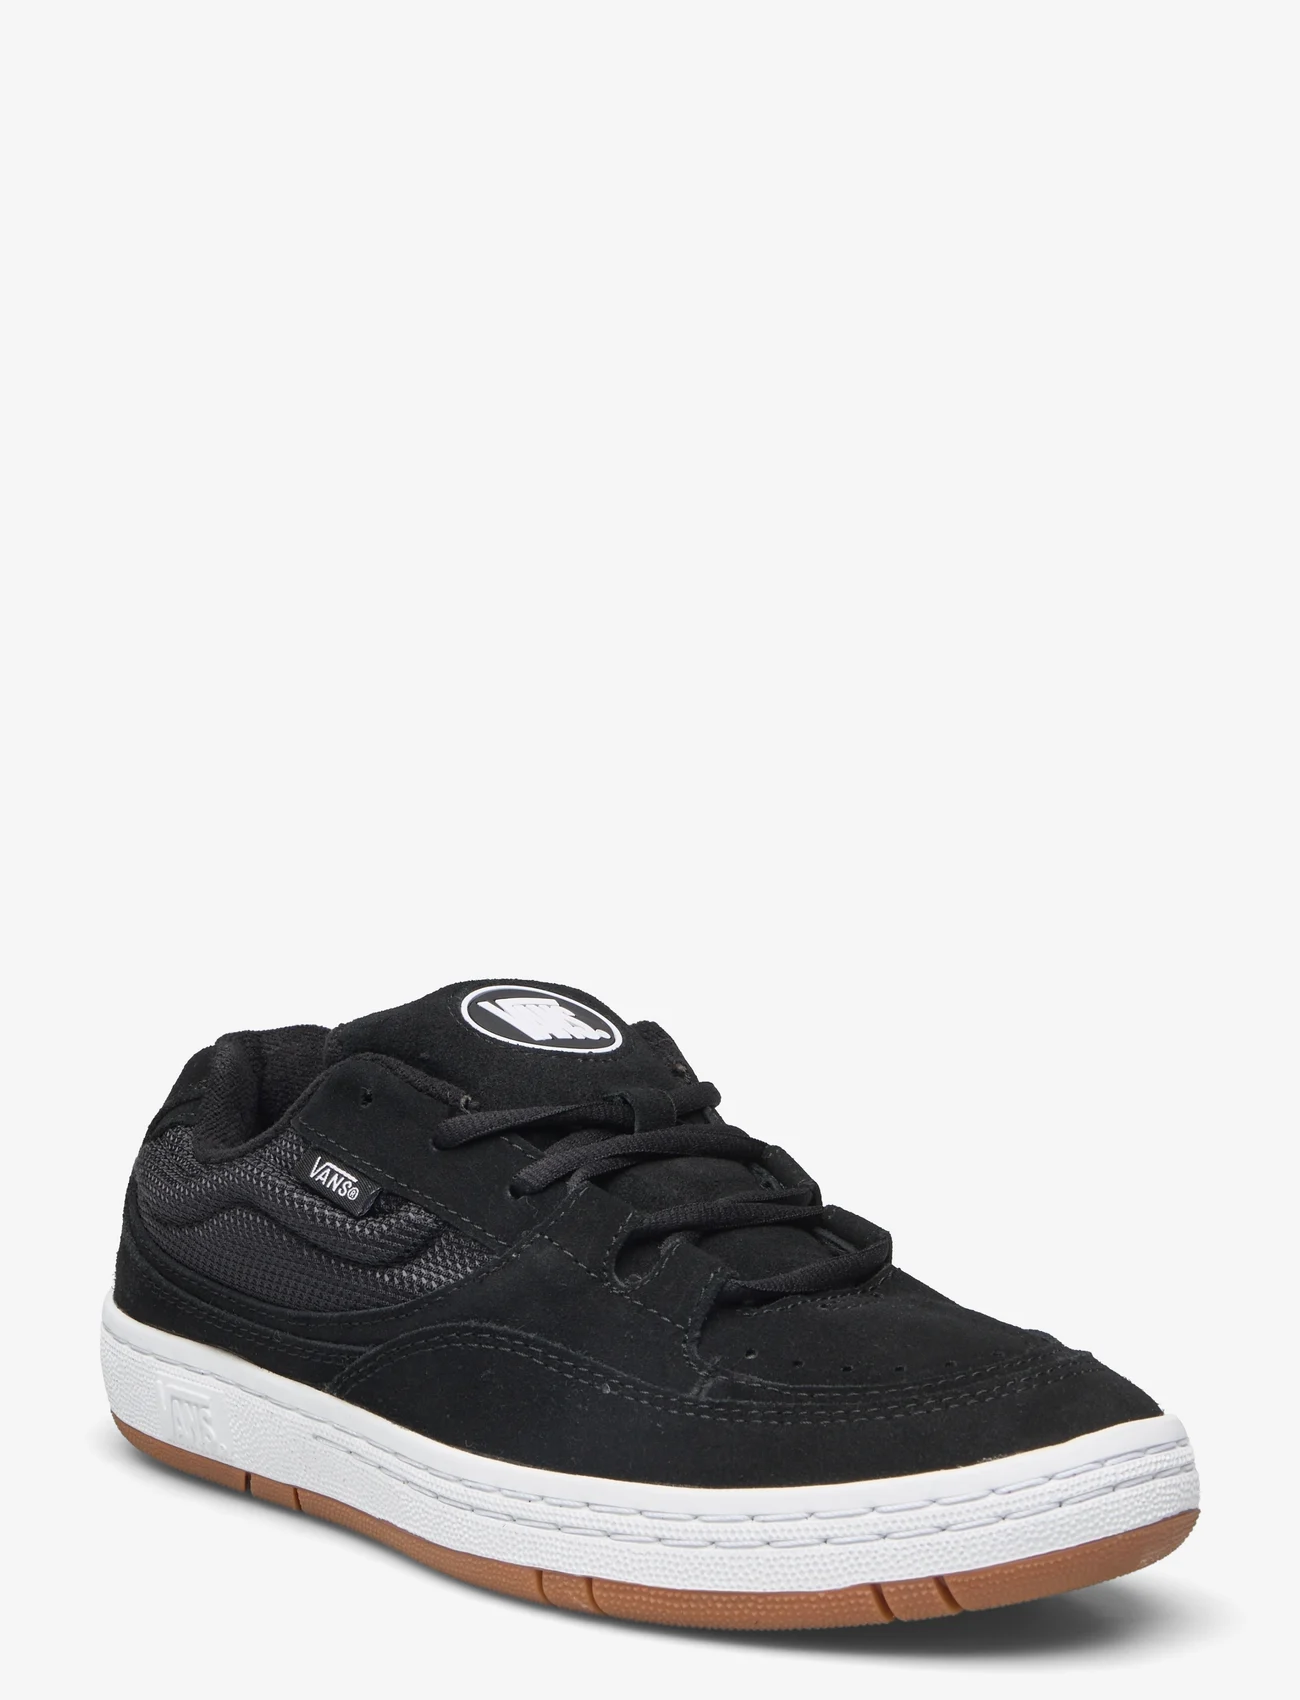 VANS - Speed LS - lave sneakers - black/true white - 0